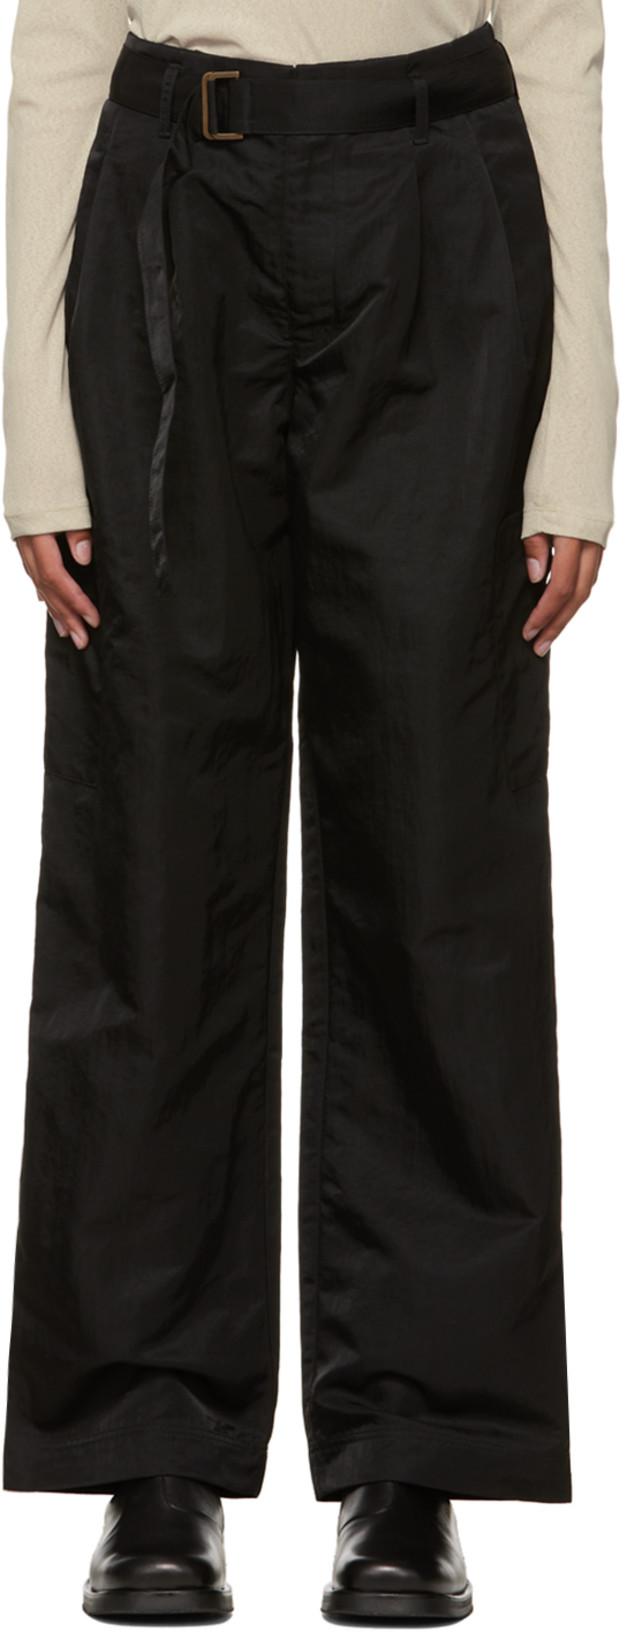 Black Cinch Belt Trousers by DEVEAUX NEW YORK